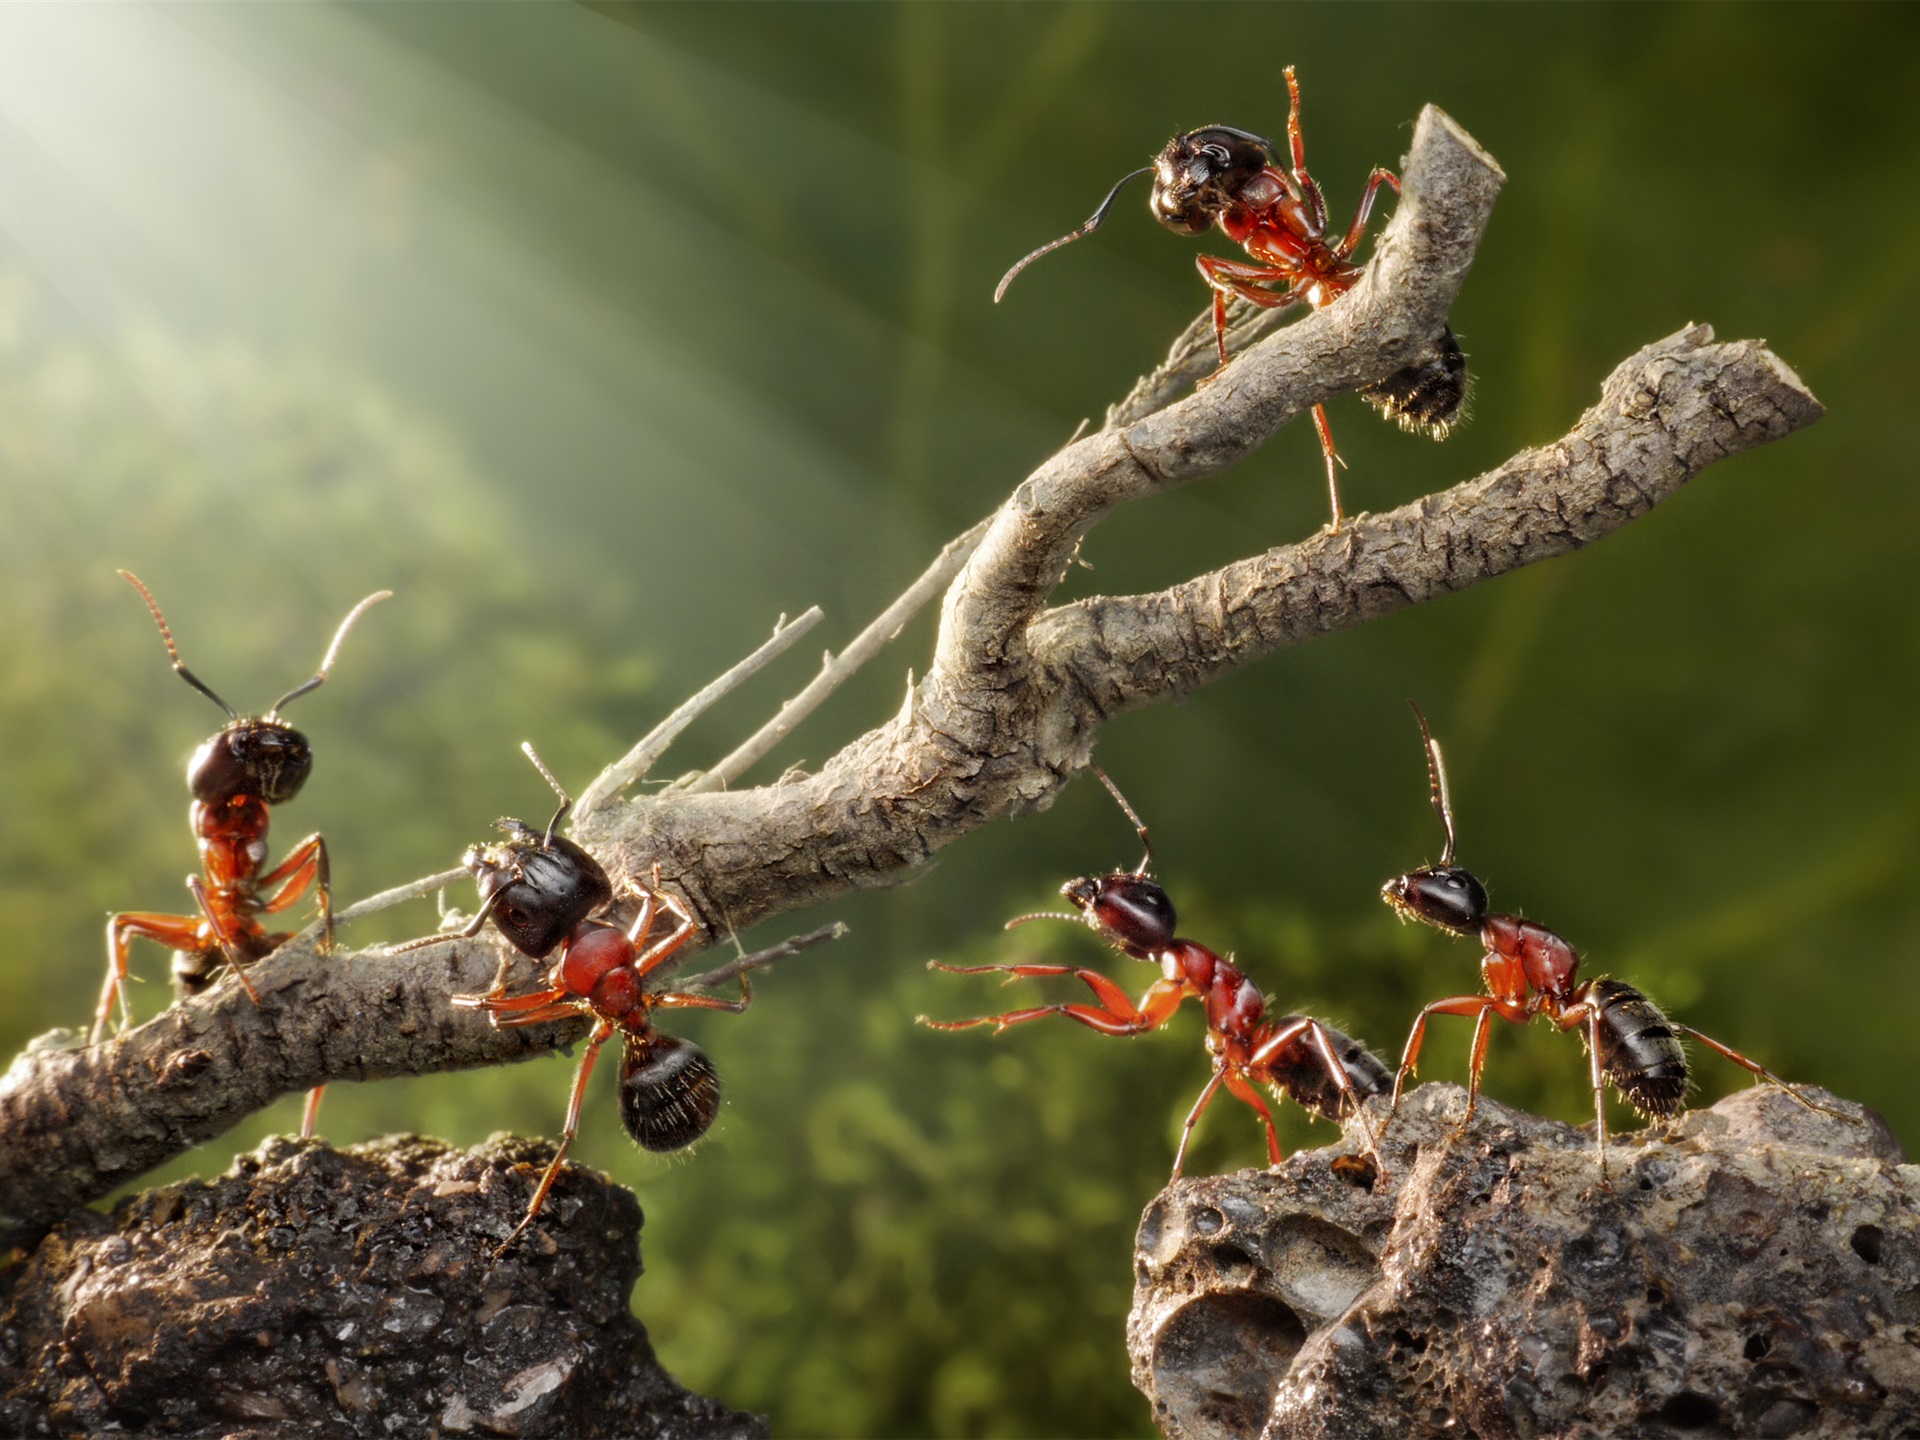 Científicos Calculan Cuántas Hormigas Hay En El Mundo Las Hormigas Se Han Convertido En Uno De Los Insectos Más Interesantes De Investigar, No Solo Por Su Forma De Trabajar Y Establecer Relaciones De Poder. &Nbsp;&Nbsp; Https://Larevistadelsureste.com